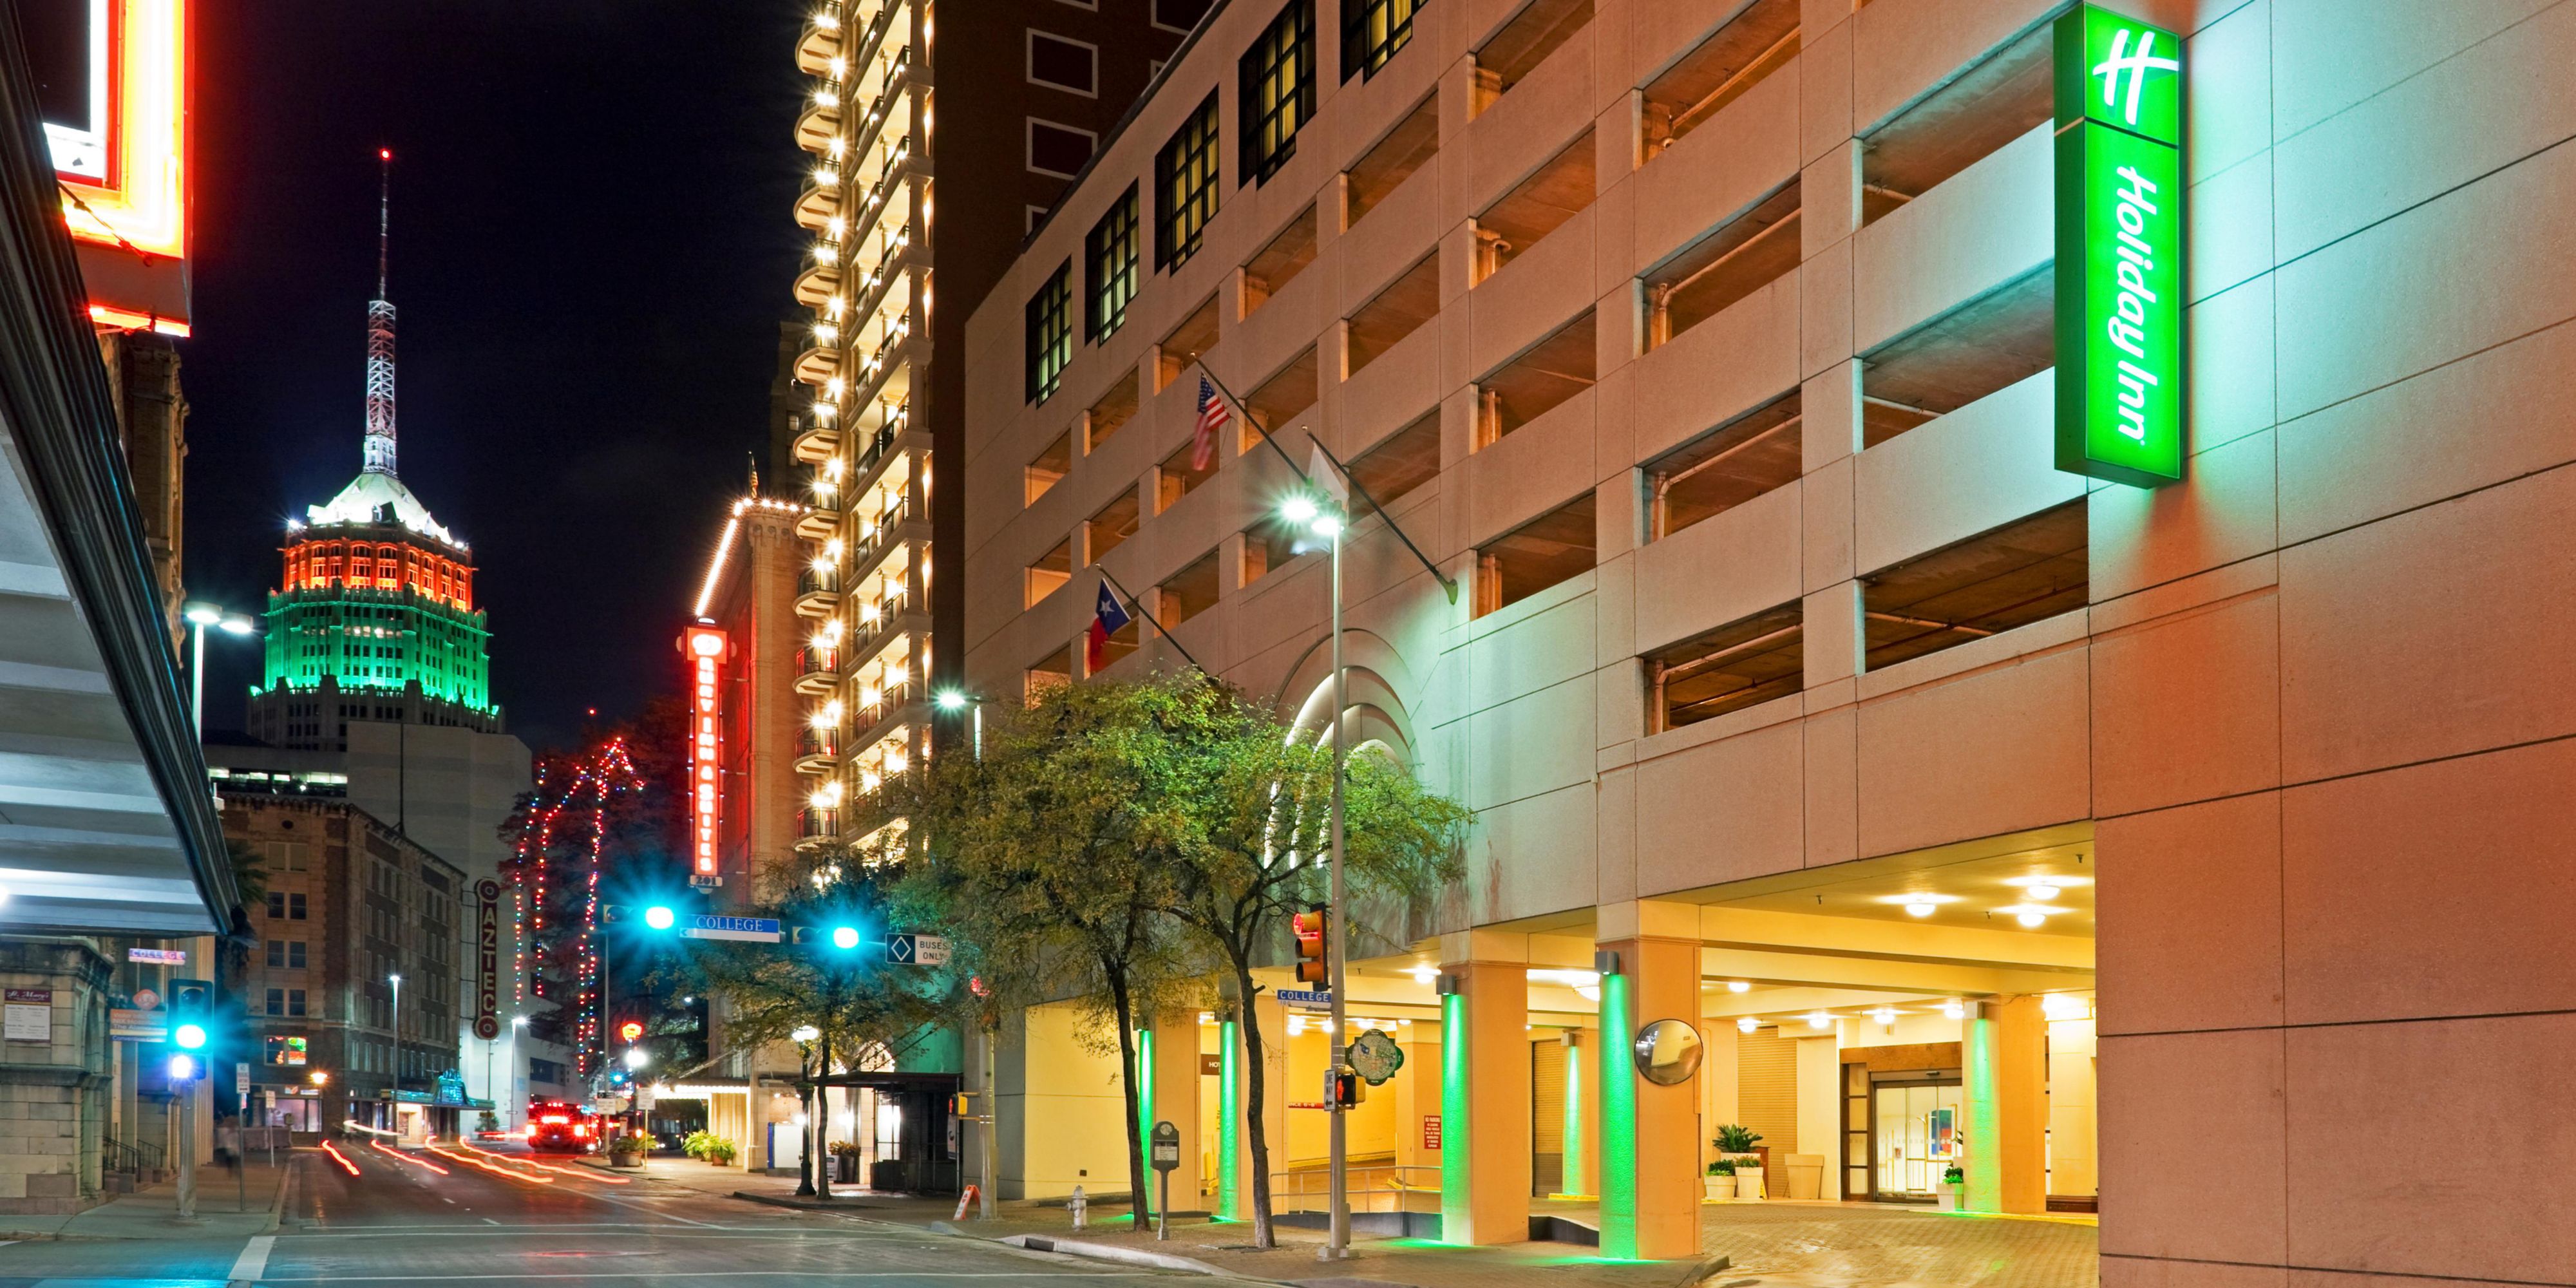 Hotel Holiday Inn San Antonio Riverwalk Reserve directo y ahorre